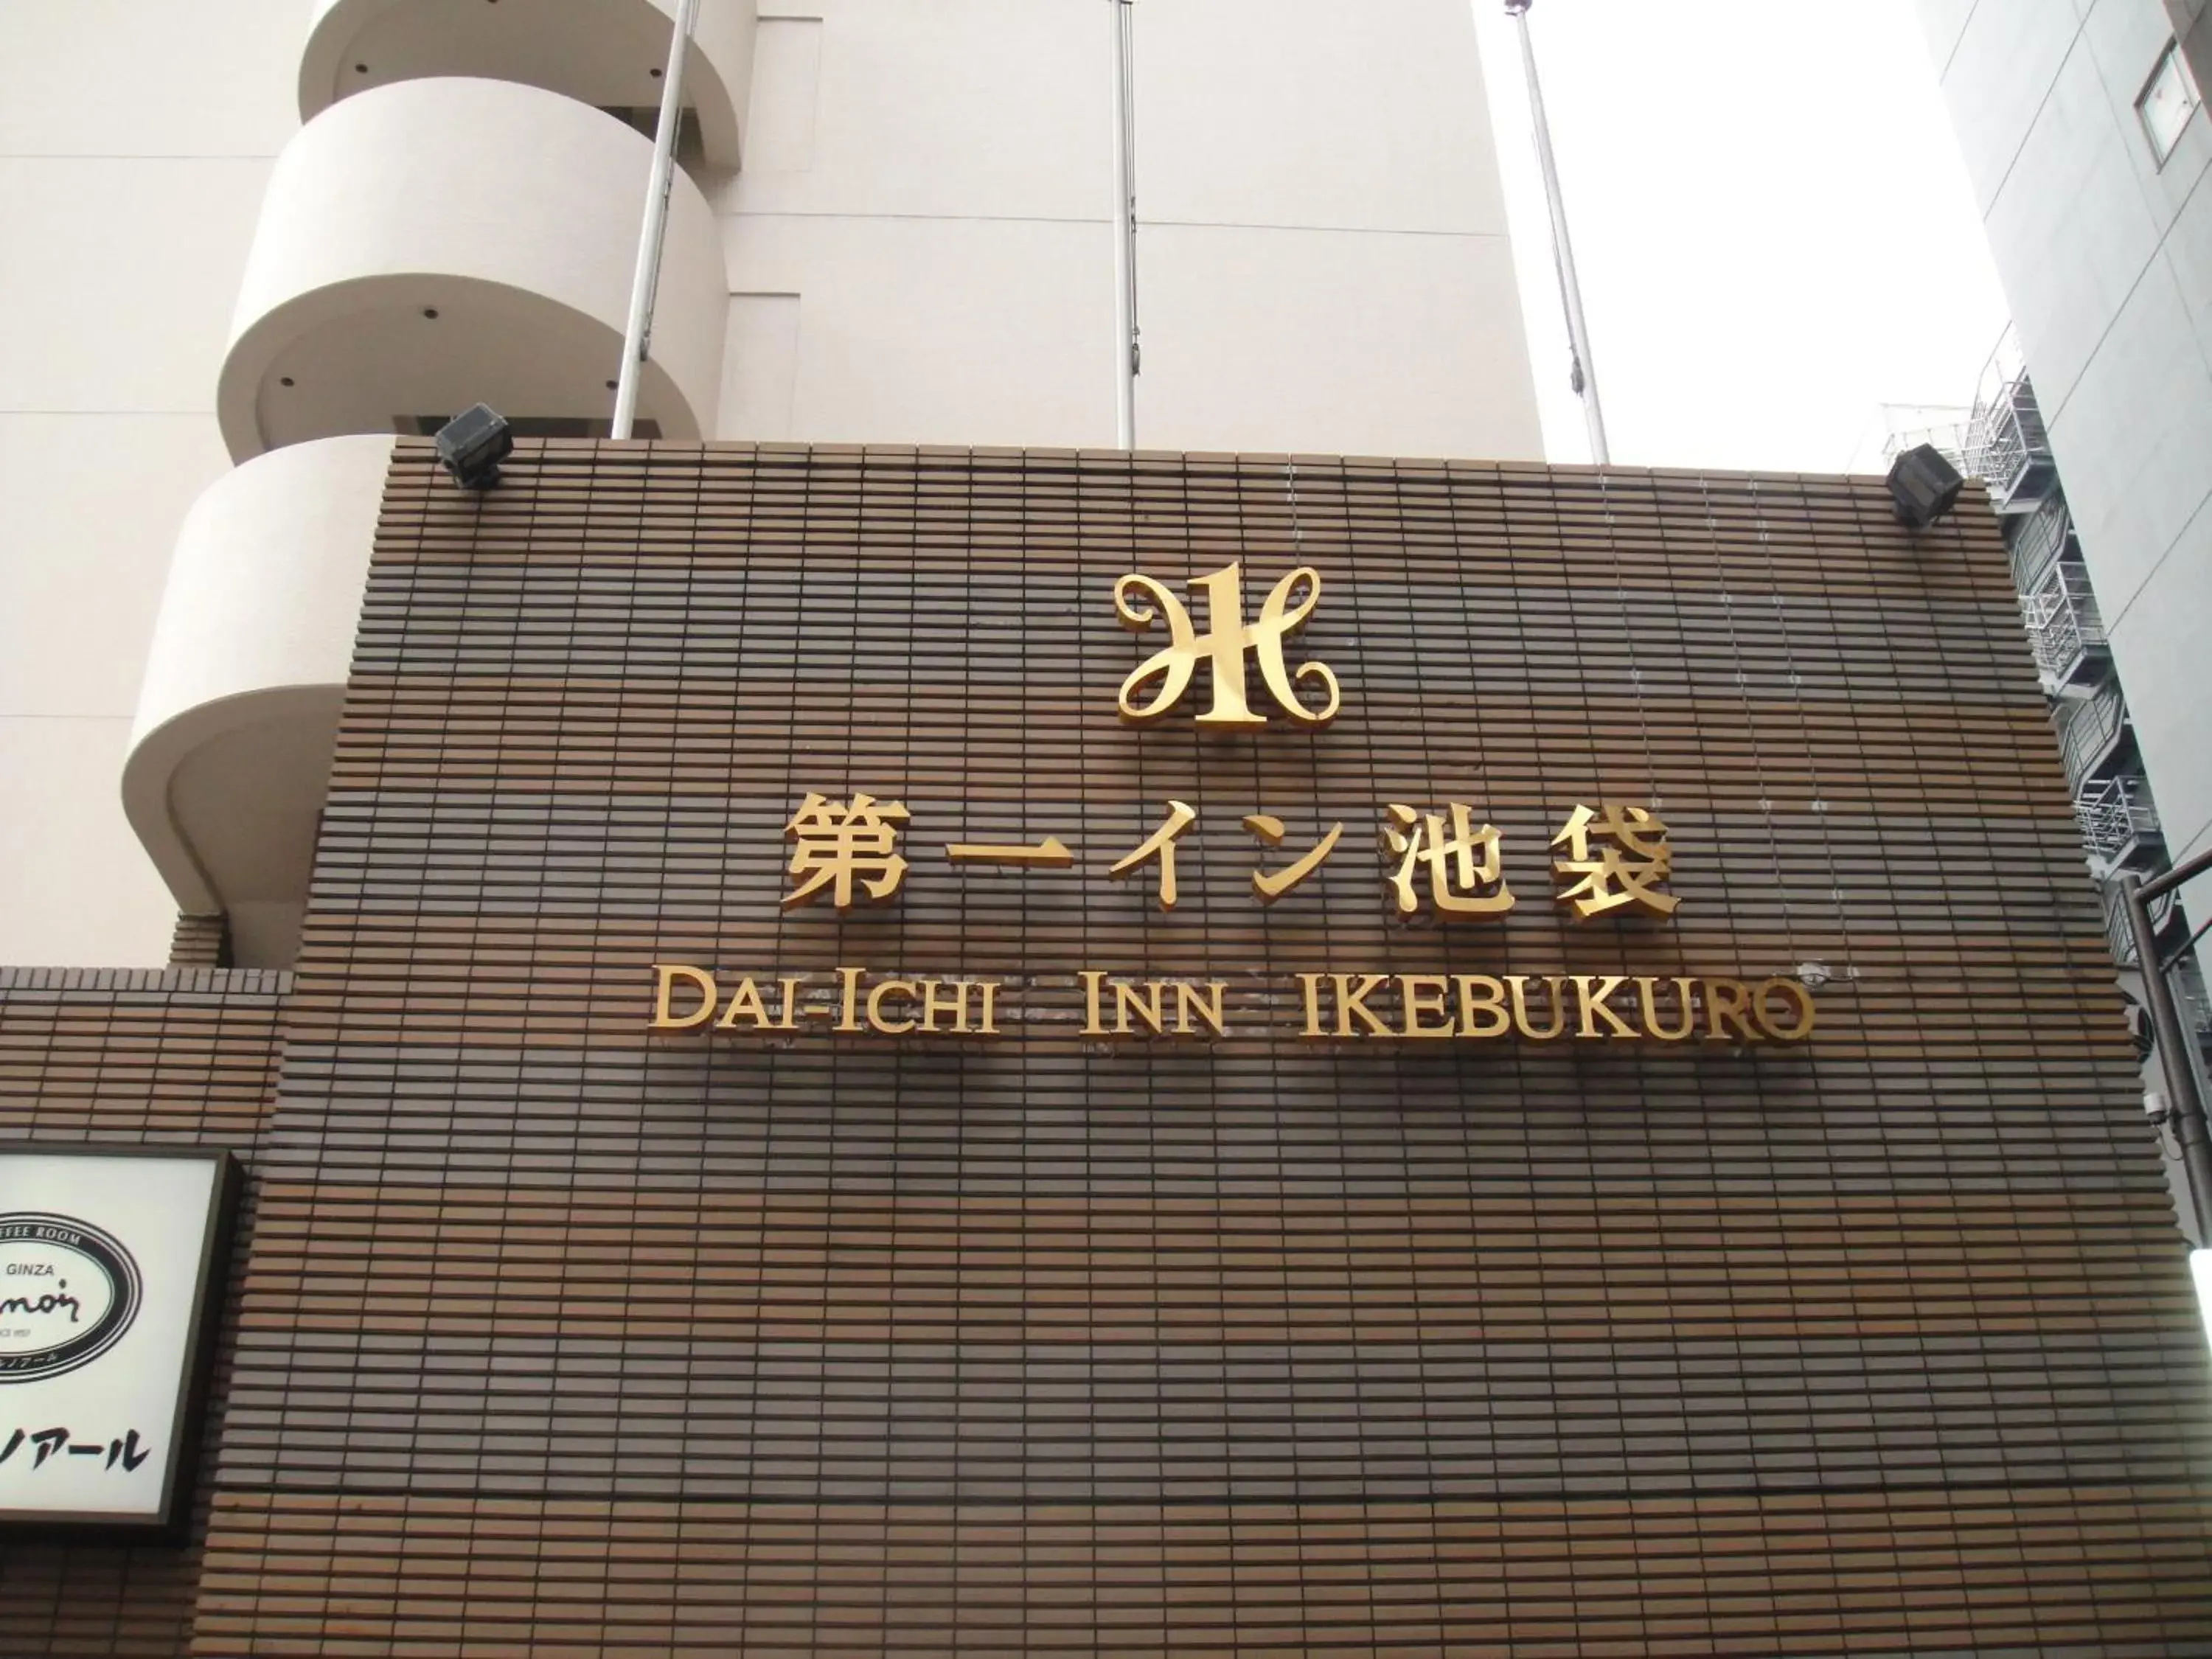 Facade/entrance in Daiichi Inn Ikebukuro